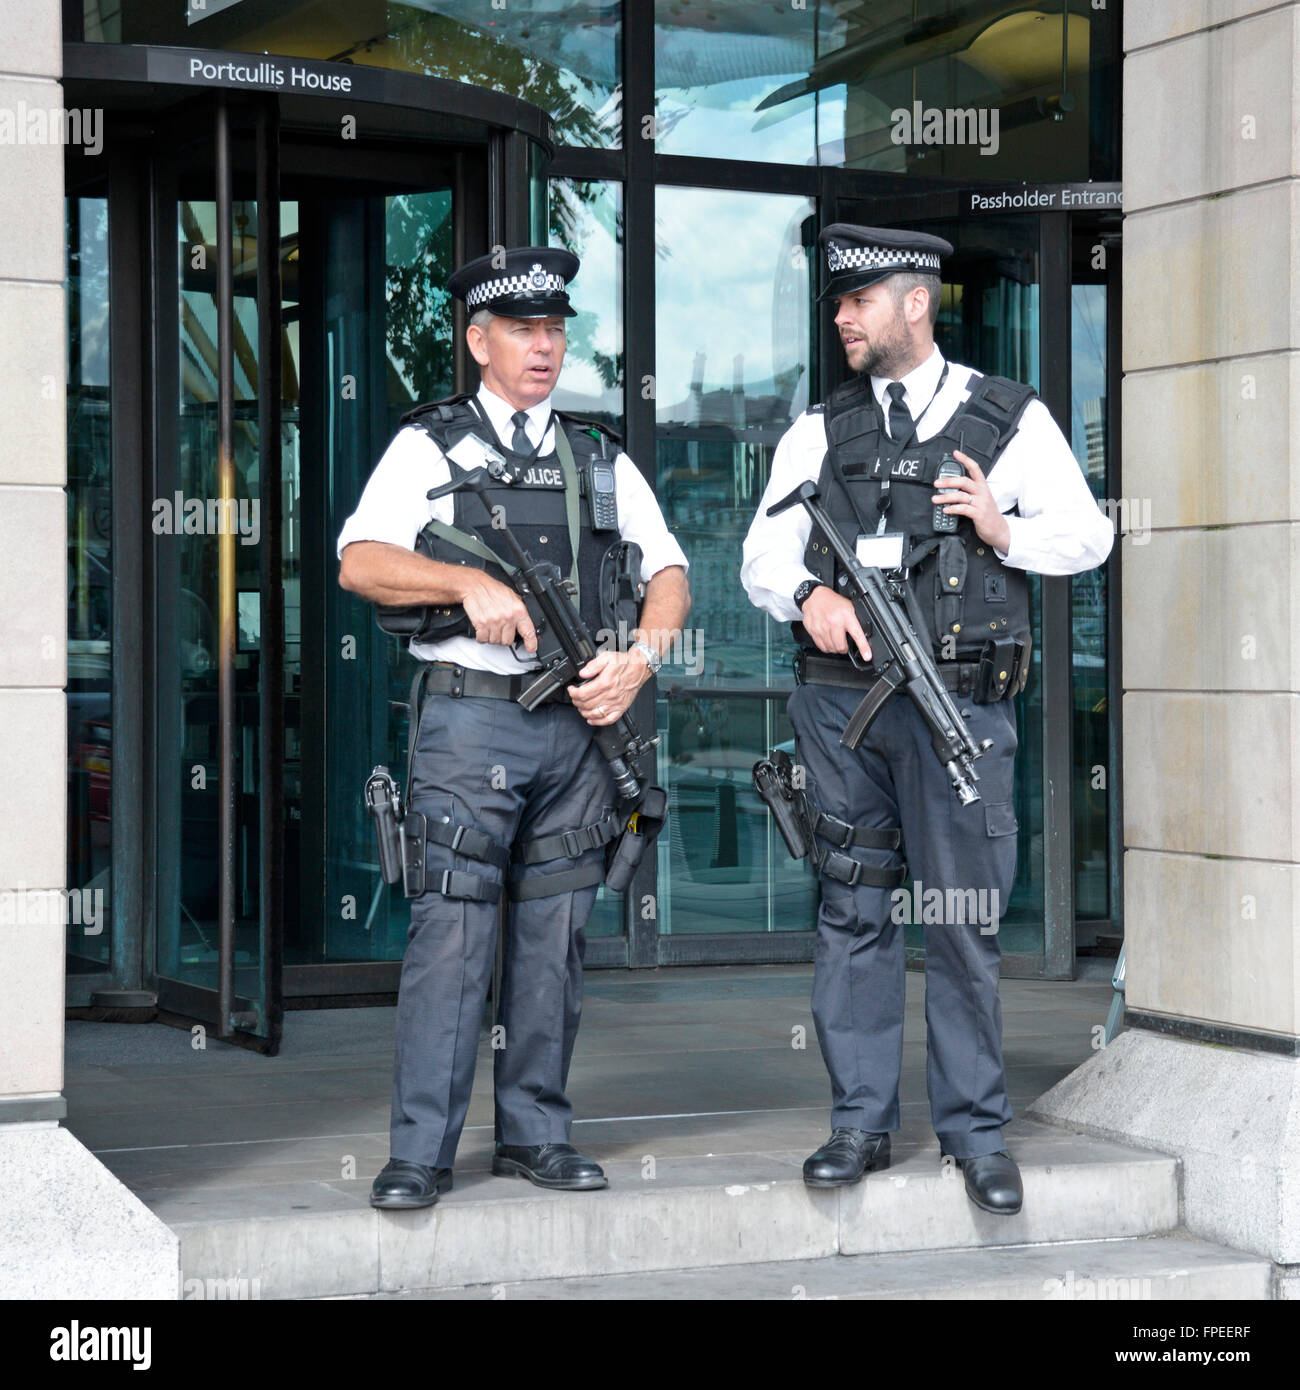 La Policía Metropolitana del Reino Unido armado oficial de la policía con armas visibles de guardia a la entrada a Portcullis House Casas del Parlamento Londres England Reino Unido Foto de stock